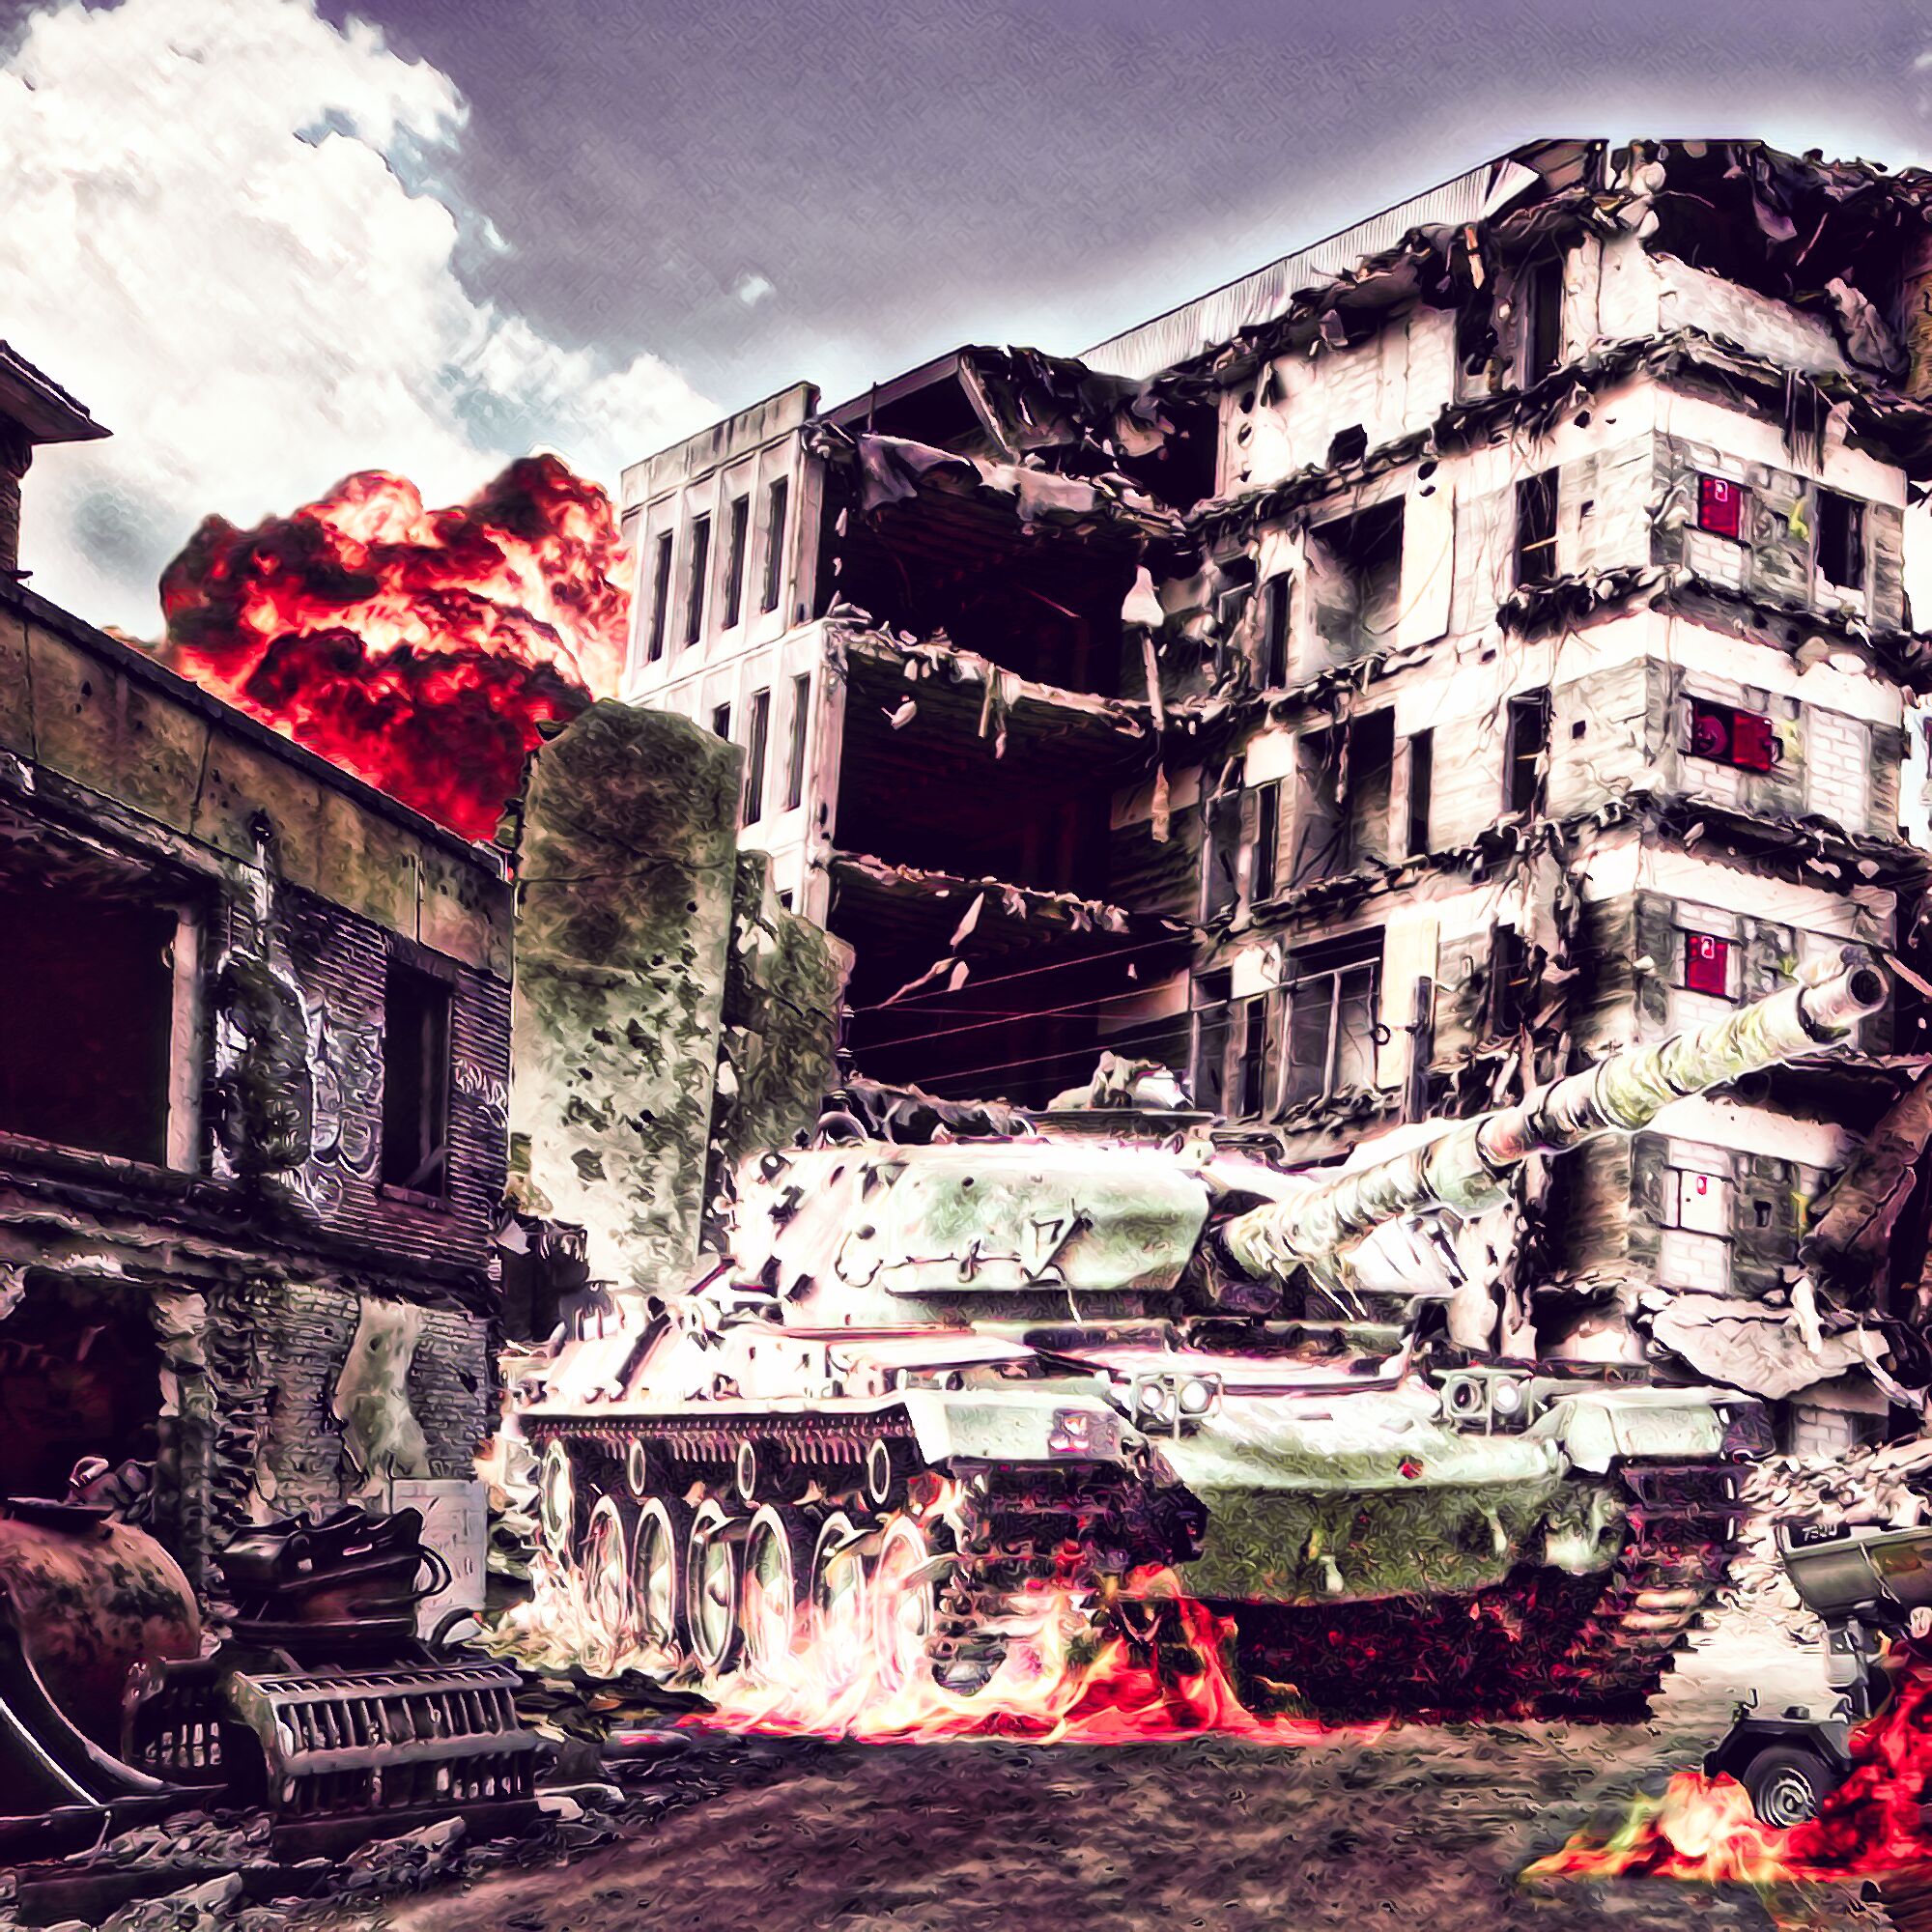 無料壁紙 背景画像素材 廃墟と戦車 爆発で崩壊した都市 Free Illustlation くりえいてぃぶ